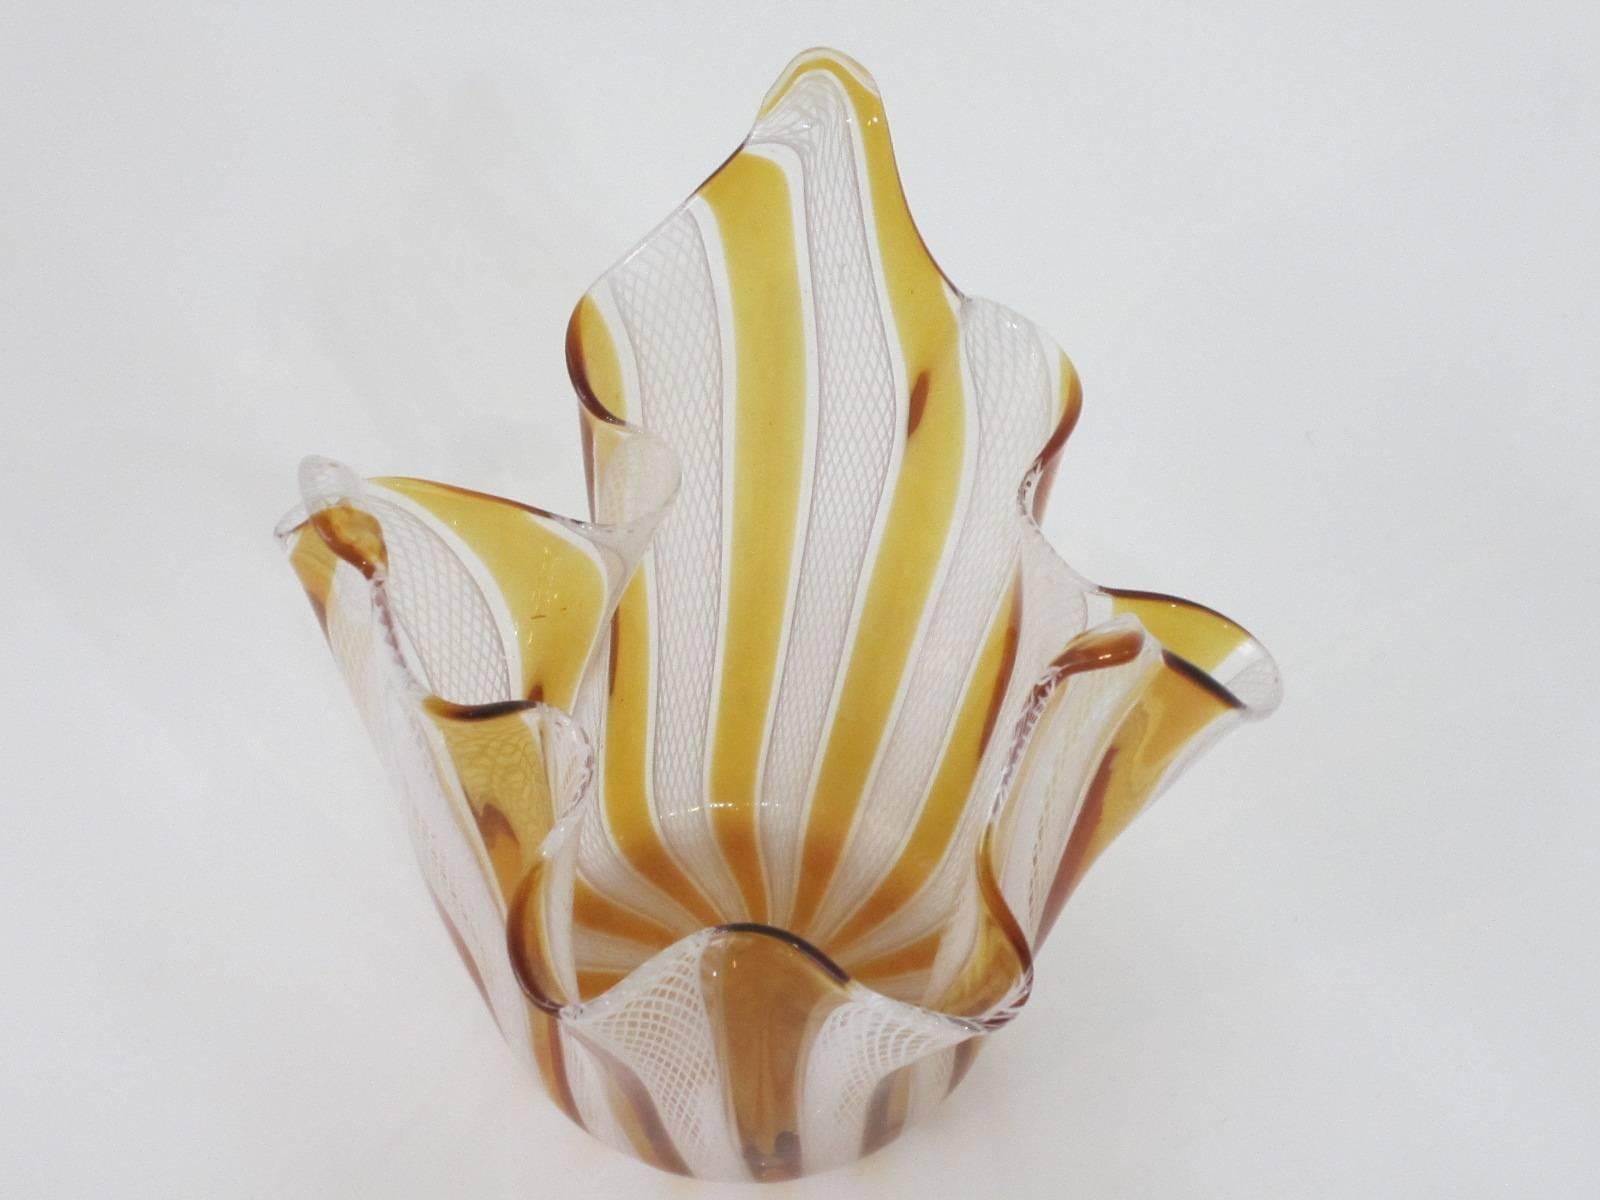 Handblown Murano Glass Amber and White Latticino Handkerchief Bowl 1